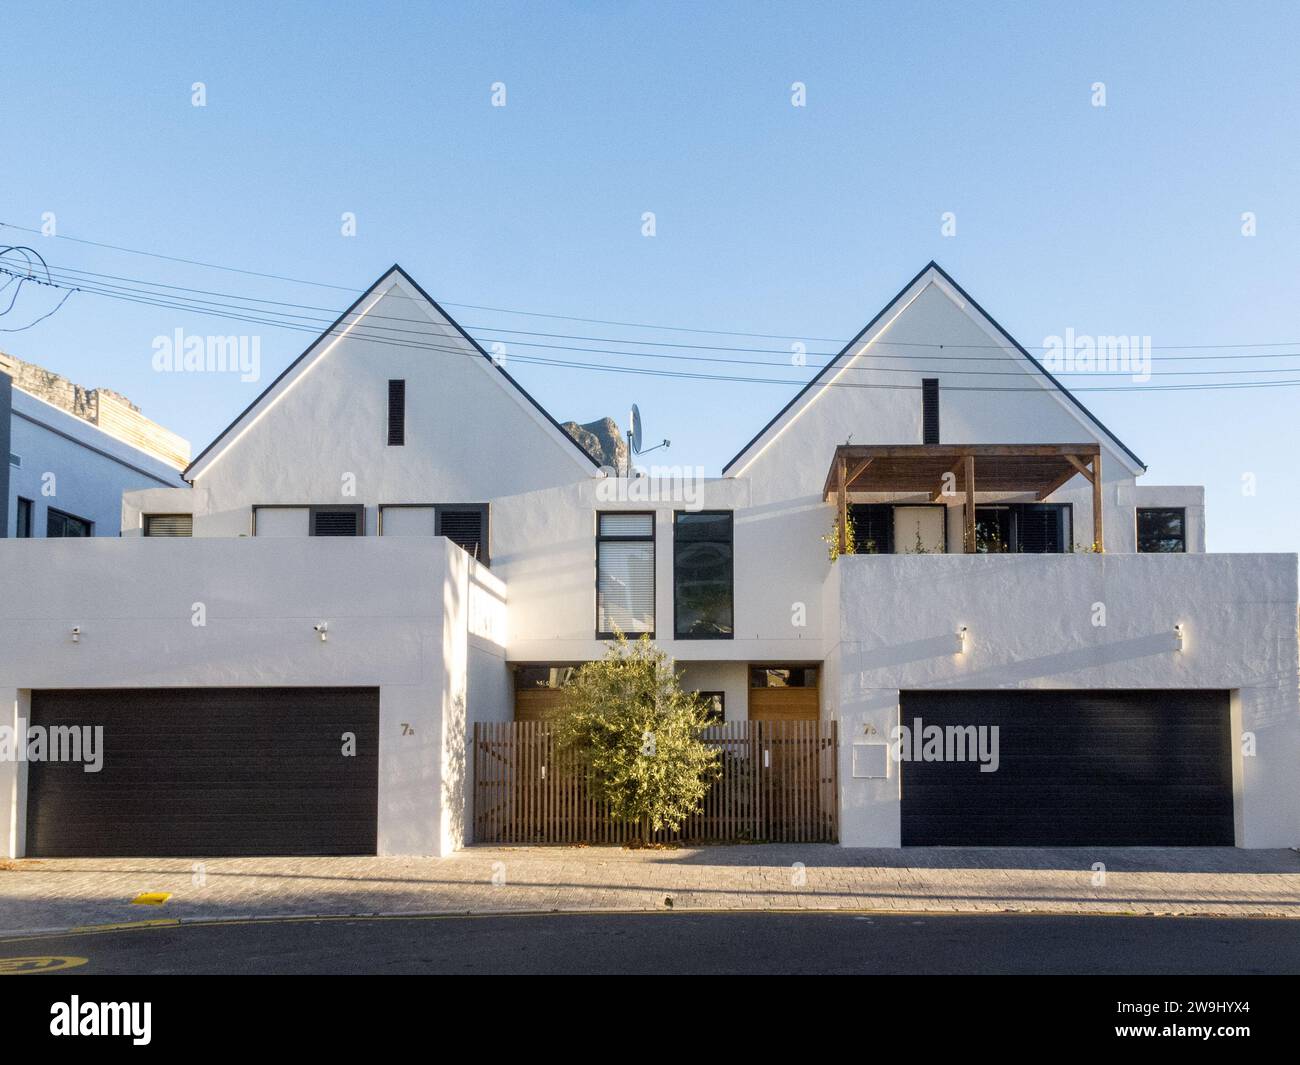 Doppelhaushälften in modernen oder zeitgenössischen städtischen Doppelstockhäusern in einem Vorort von Kapstadt, Südafrika Konzept Immobilien oder Immobilien Stockfoto